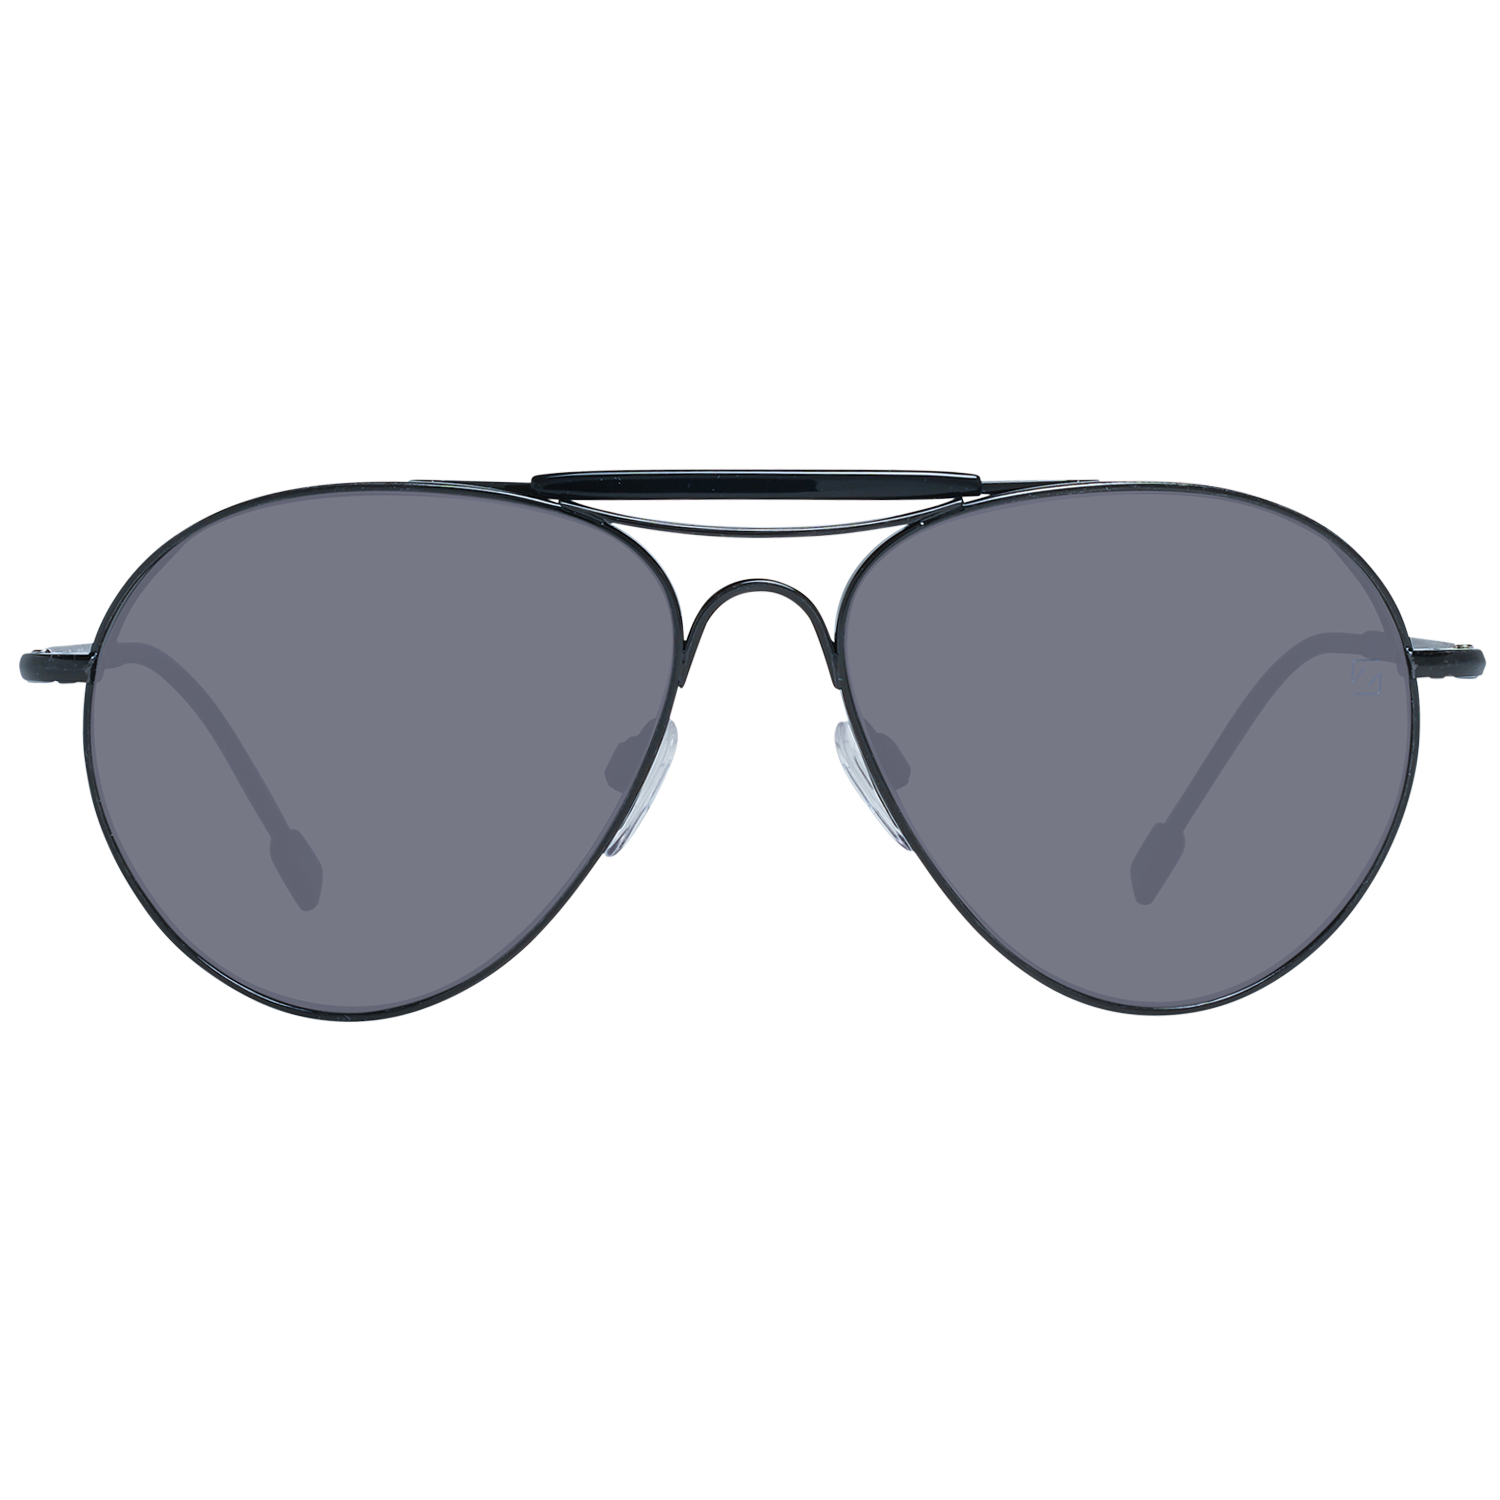 Zegna Couture Sunglasses Zegna Couture Sunglasses ZC0020 57 02A Titanium Eyeglasses Eyewear UK USA Australia 